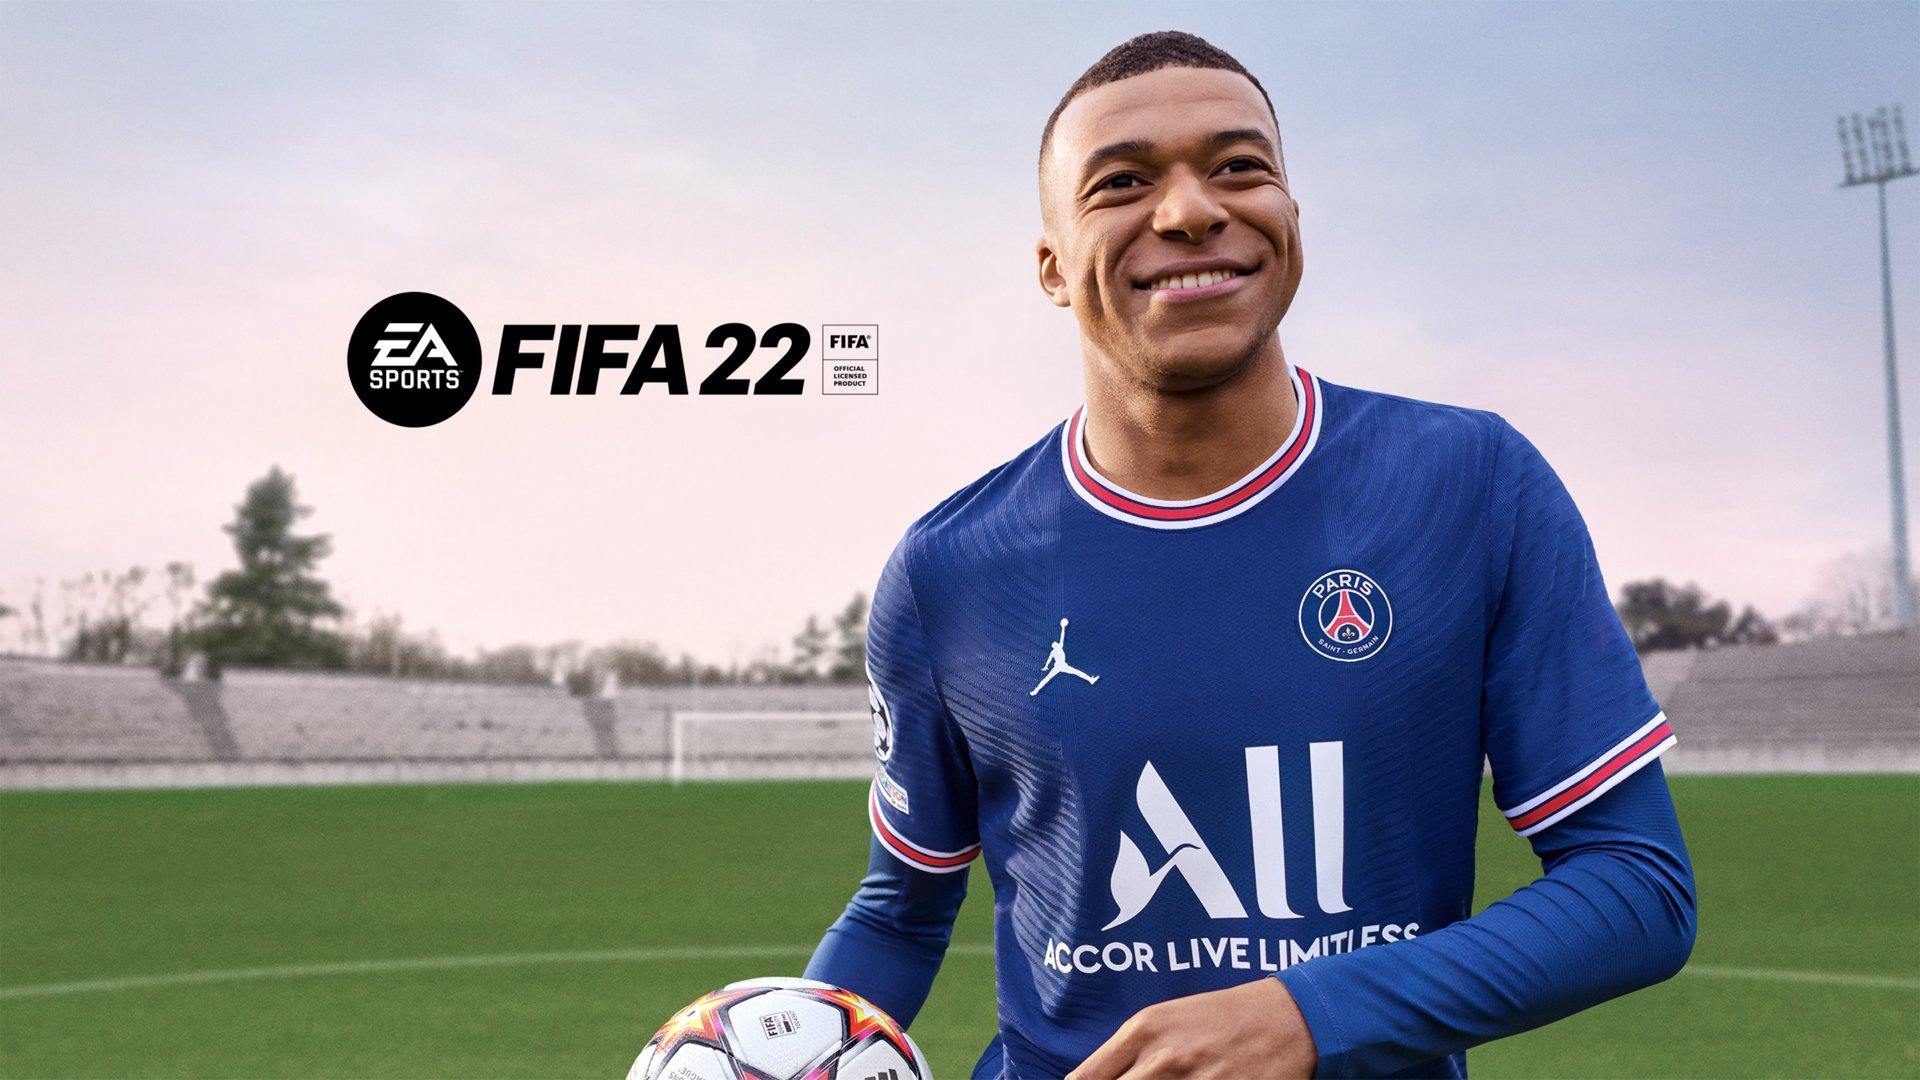 FIFA22– כל מה שצריך לדעת על פיפא 22, גרסאות, מה חדש, אילו ליגות אולי יצטרפו ואיך אפשר לרכוש כבר עכשיו!! - EXON - גיימינג ותוכנות